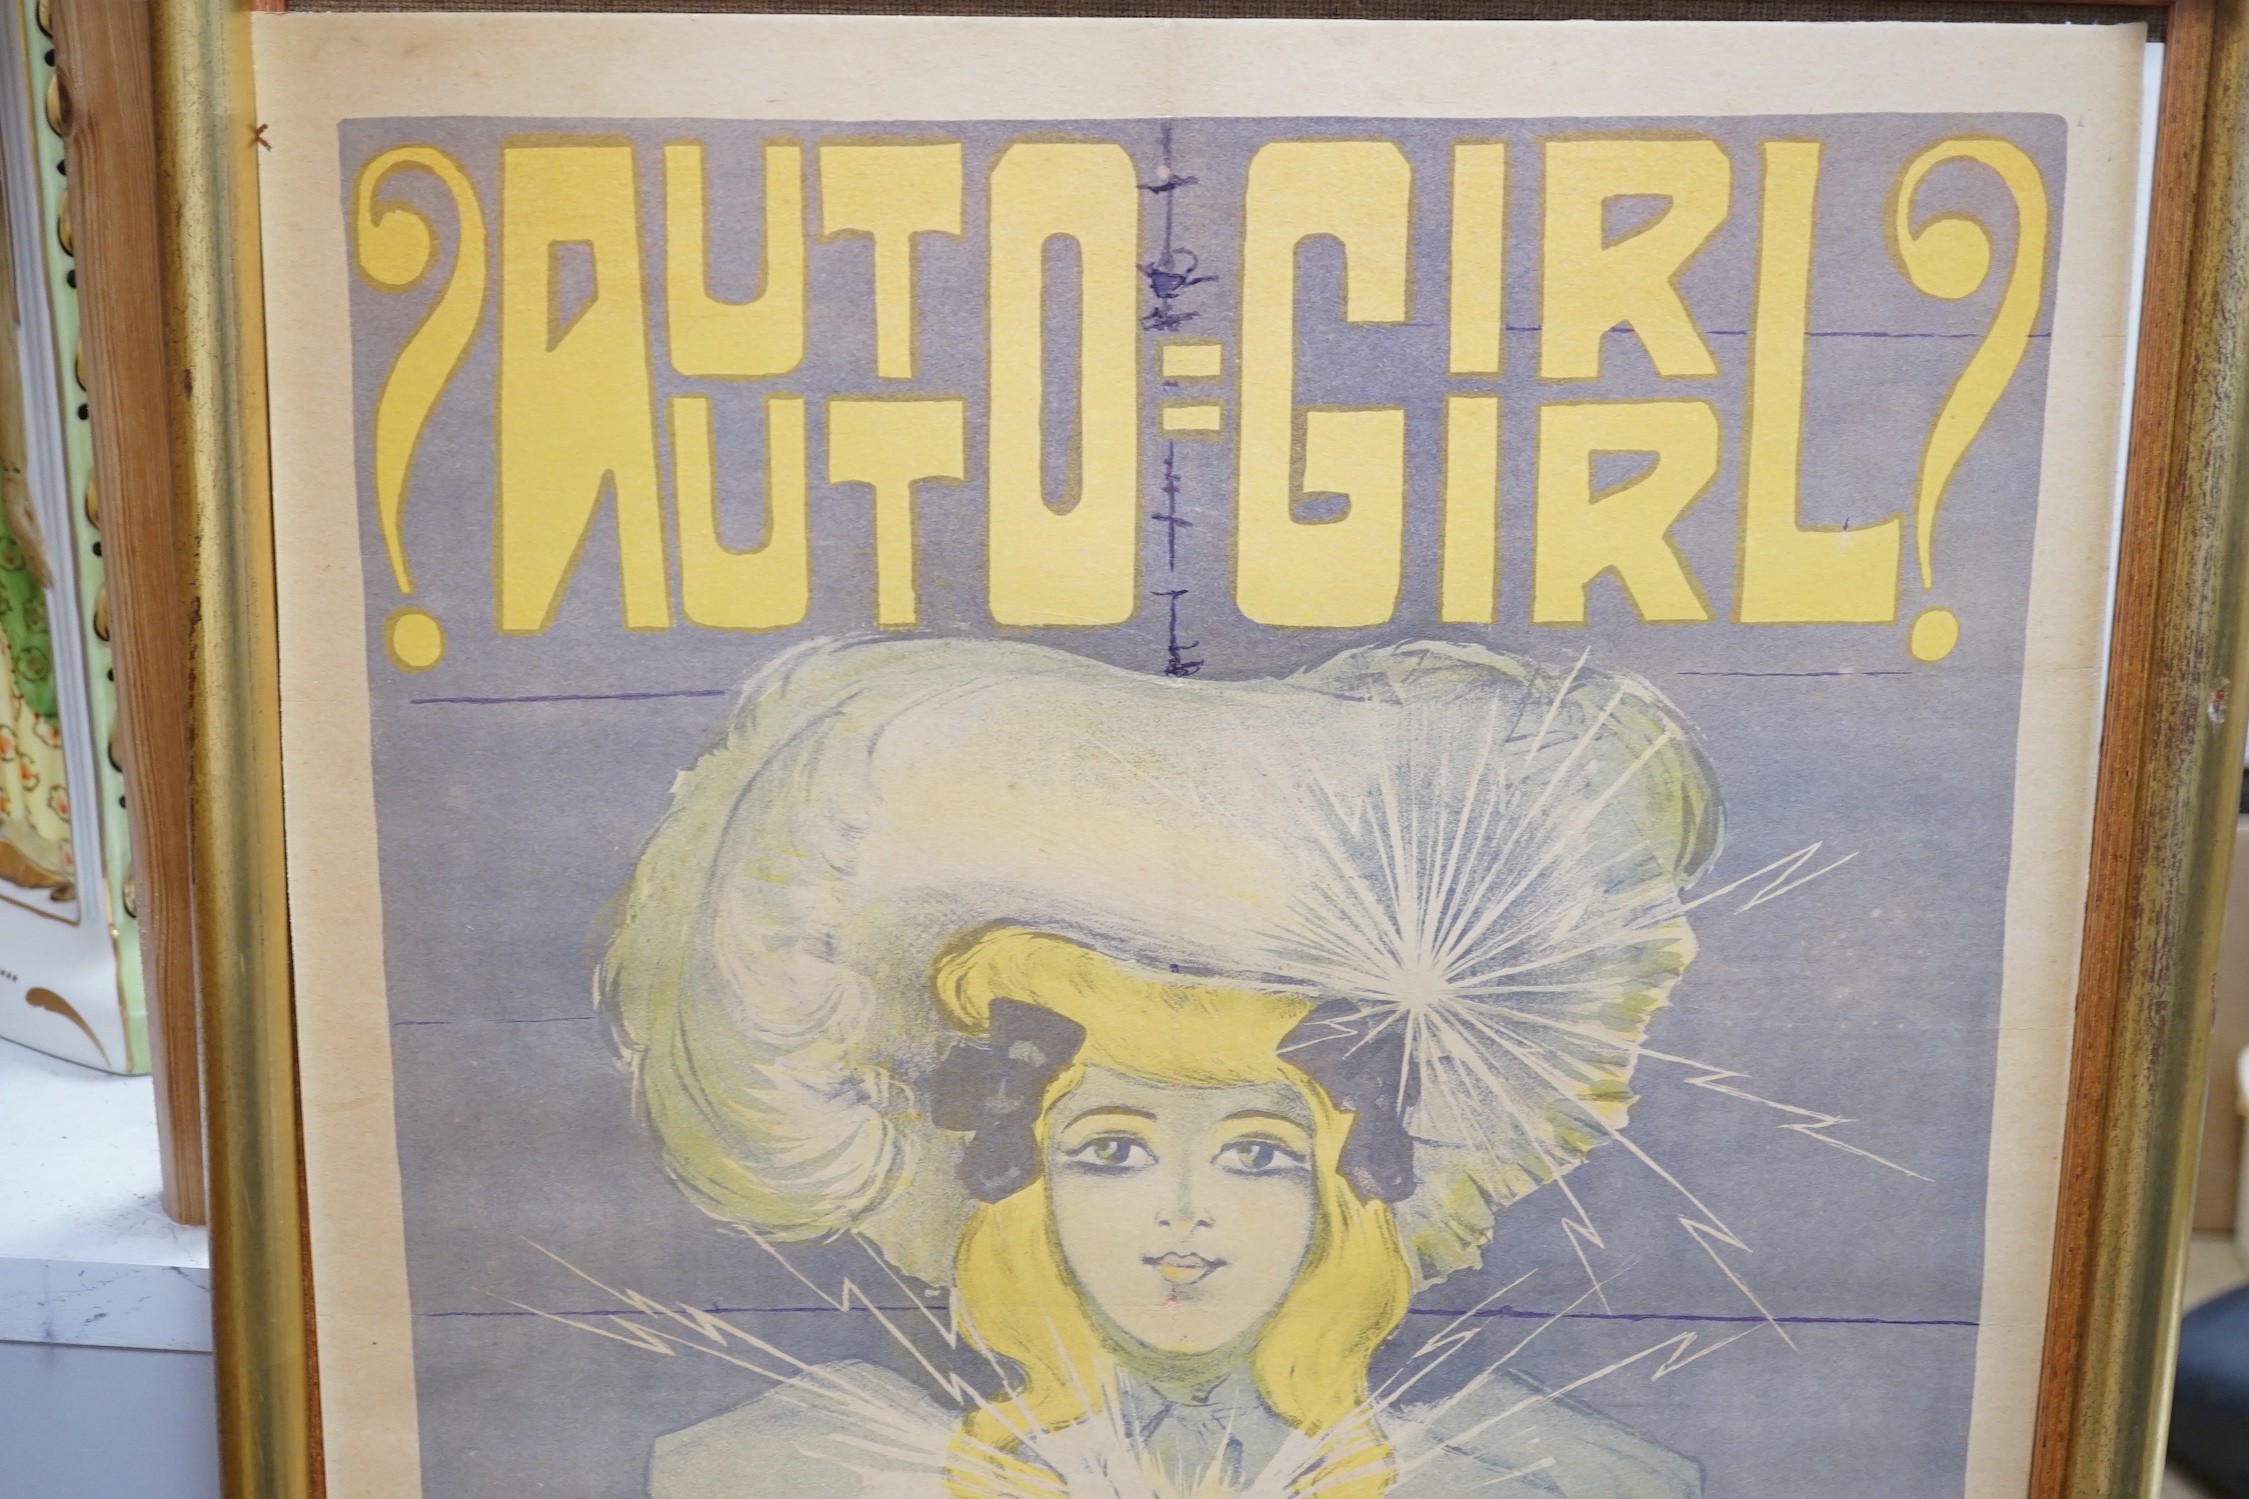 An Henri Florit poster for '?Auto-Girl?, Perfecta, Veritable, La Plus Jolie', Imprimerie Petit, 120 x 44 cm